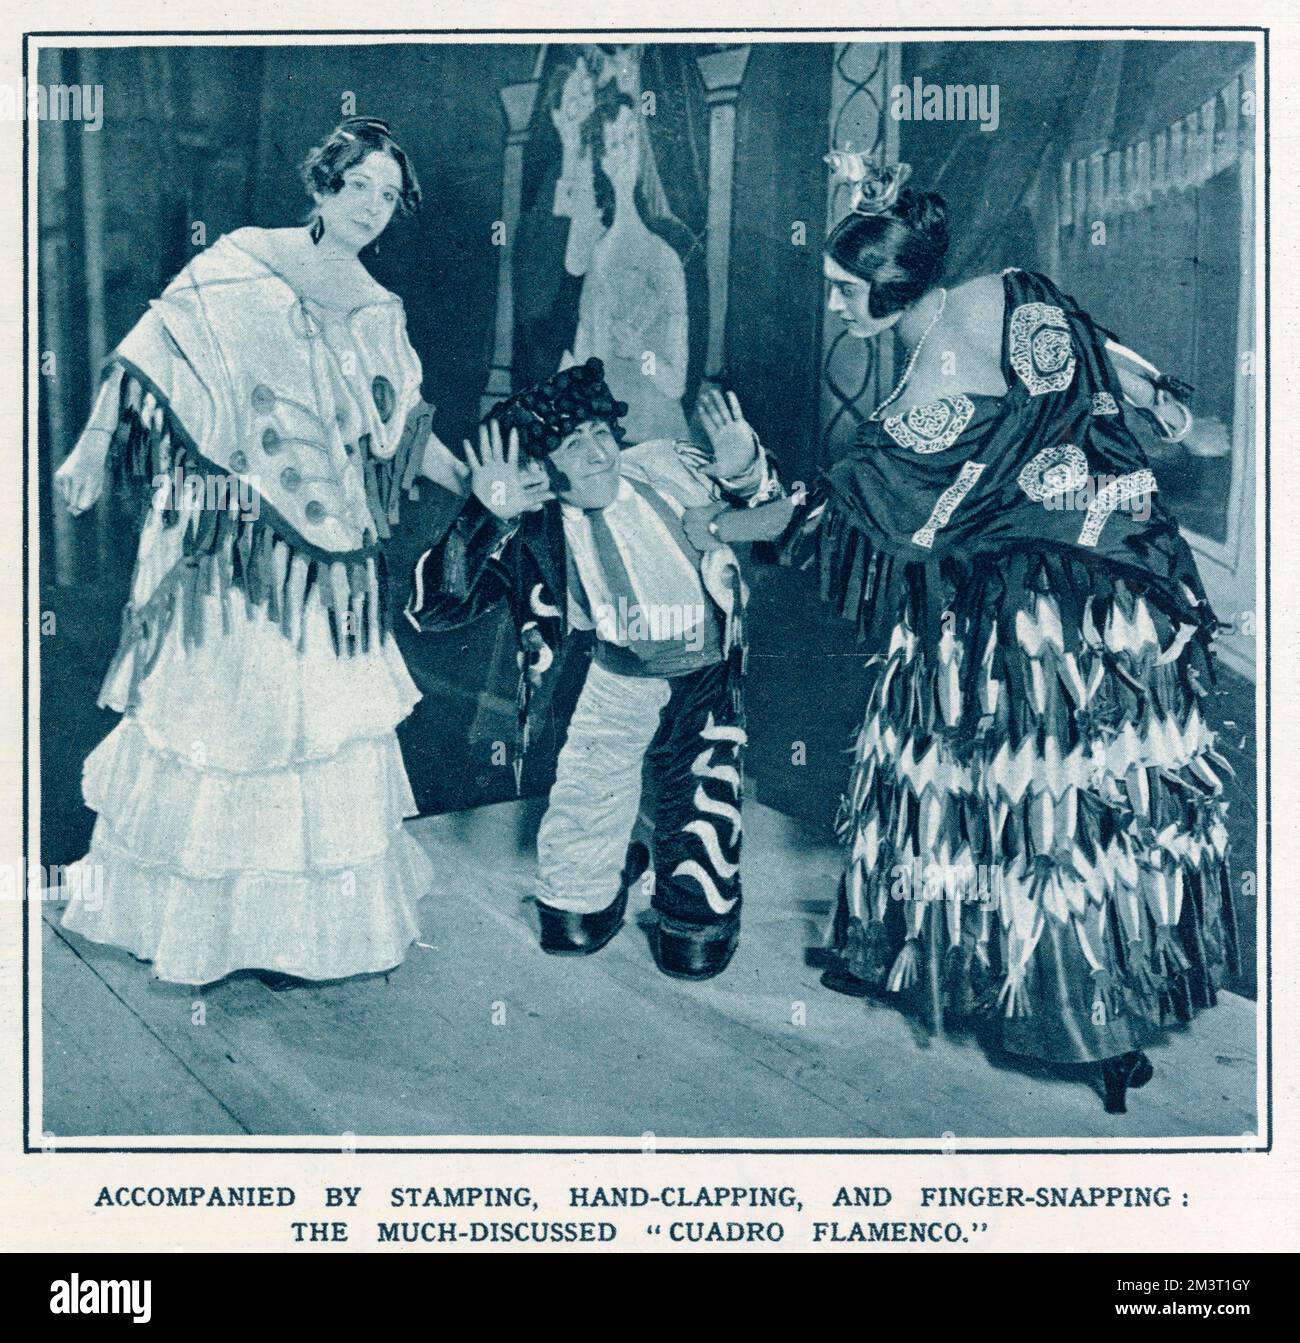 La Rubia de Jerez, Mate y Maria de Albaicin und Mate El Sin Pies führen den „Cuadro Flamenco“ auf, eine Suite andalusischer Tänze, die einen wichtigen Teil der Darbietung der Ballettzüge von Diaghilev im Prince's Theatre in London bilden. Die Landschaft und die Kostüme wurden von Pablo Picasso entworfen. Stockfoto